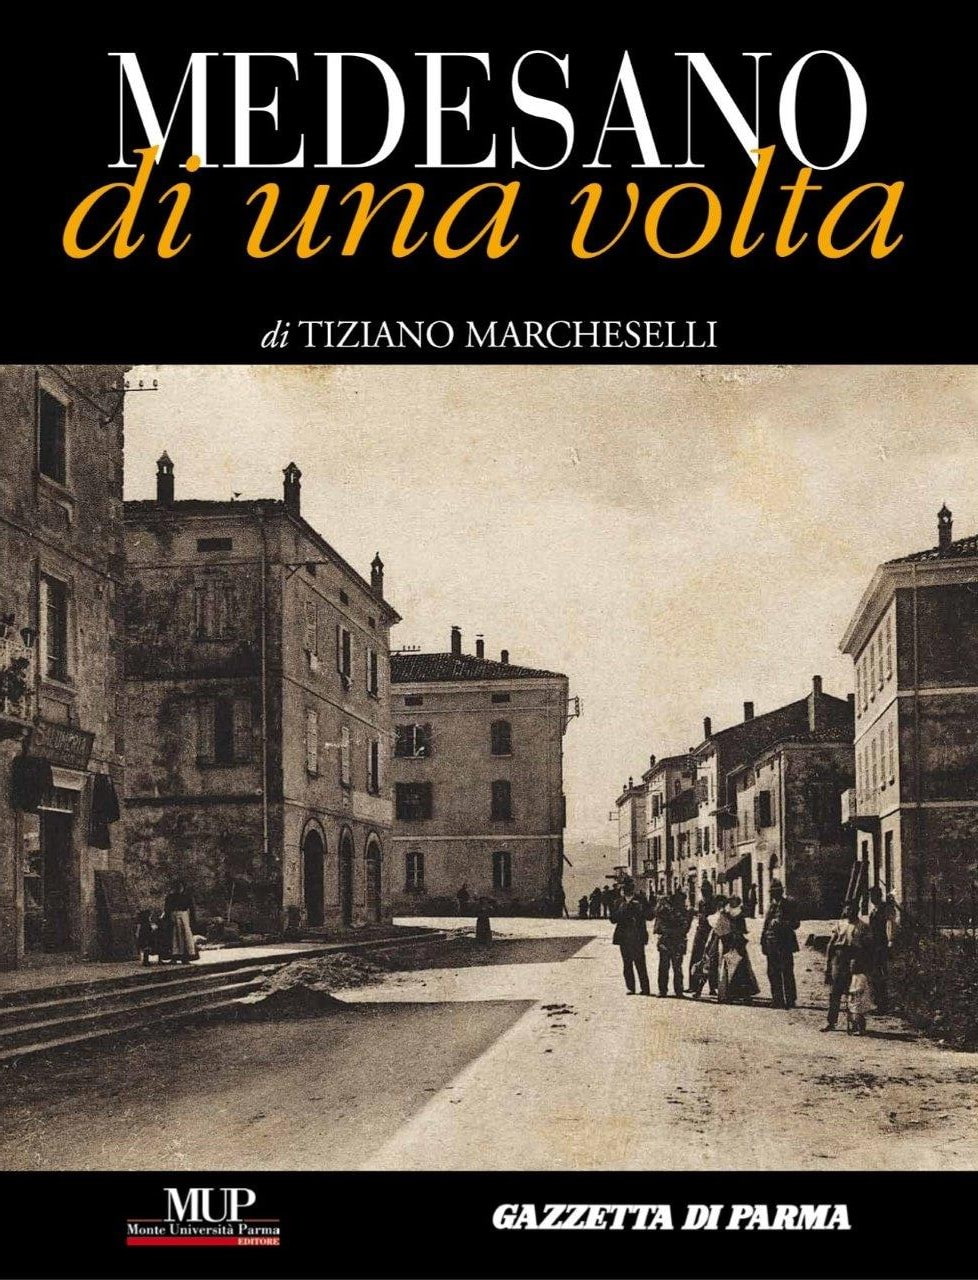 Tiziano Marcheselli, Medesano di una volta, Parma, Mup Editore / Gazzetta di Parma (Stamperia), 2012, prefazione di Roberto Bianchi